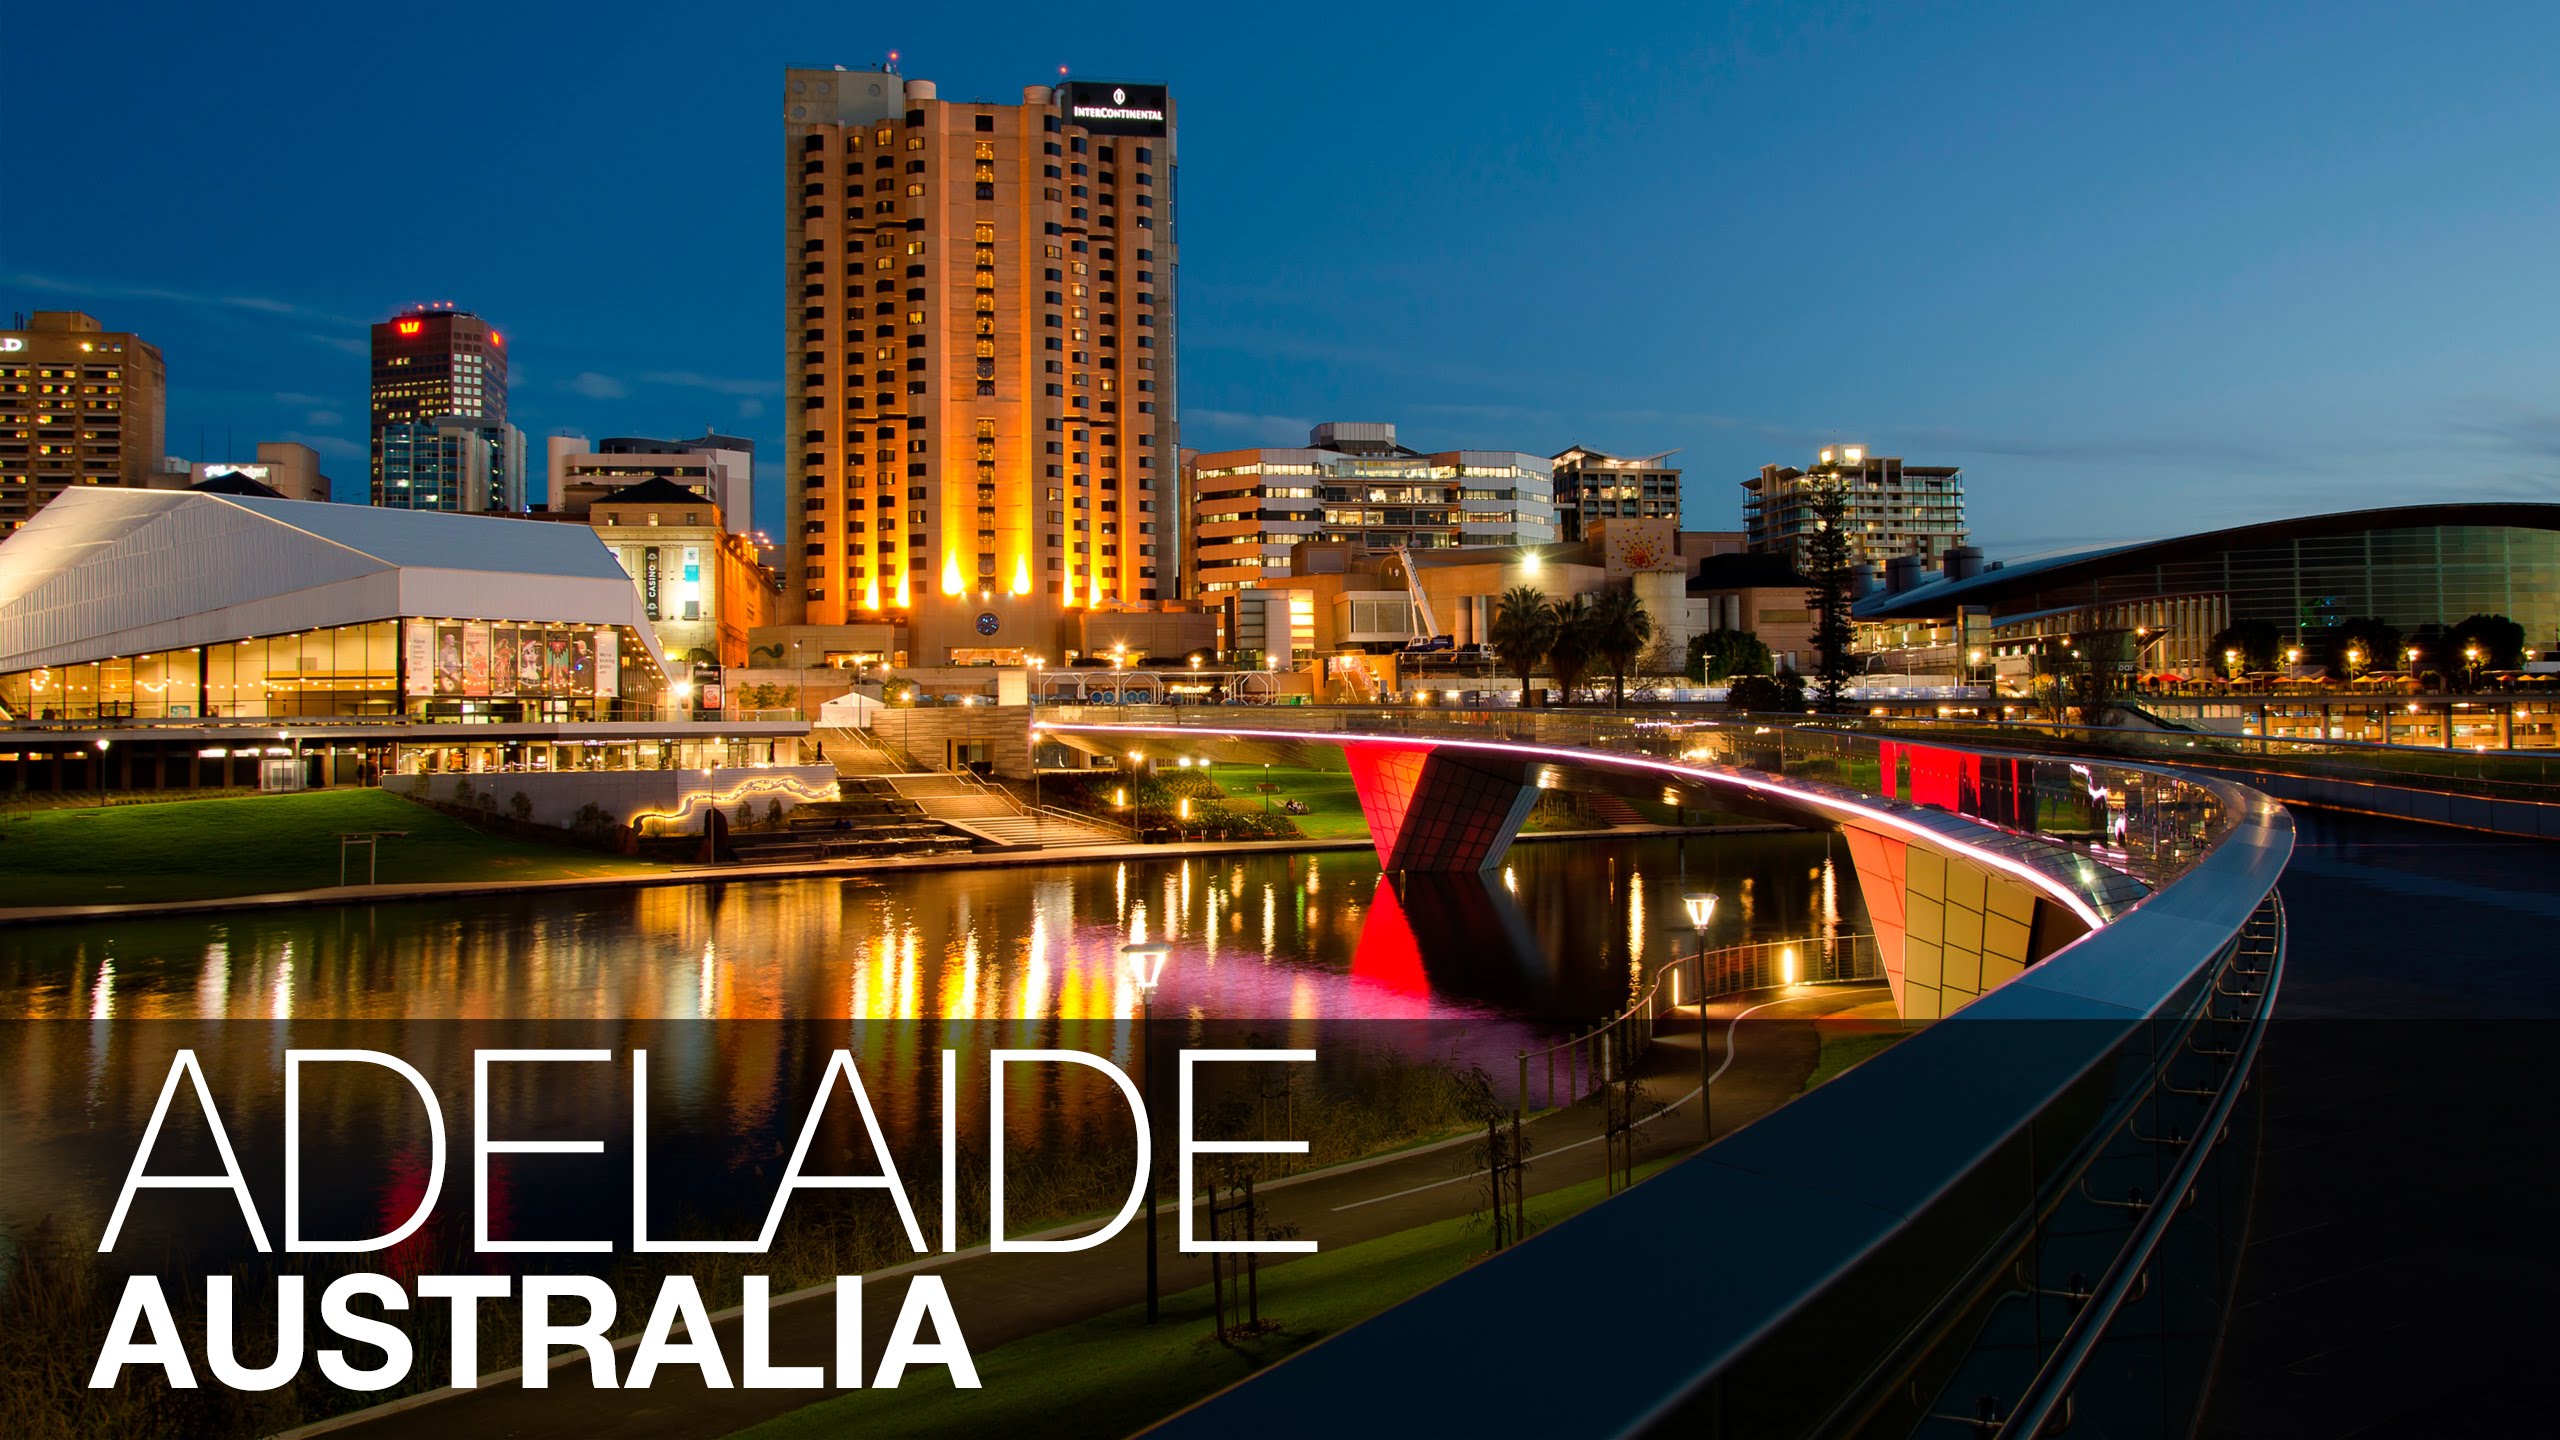 Adelaide Úc trở nên nổi trội hơn các thành phố khác tại Úc